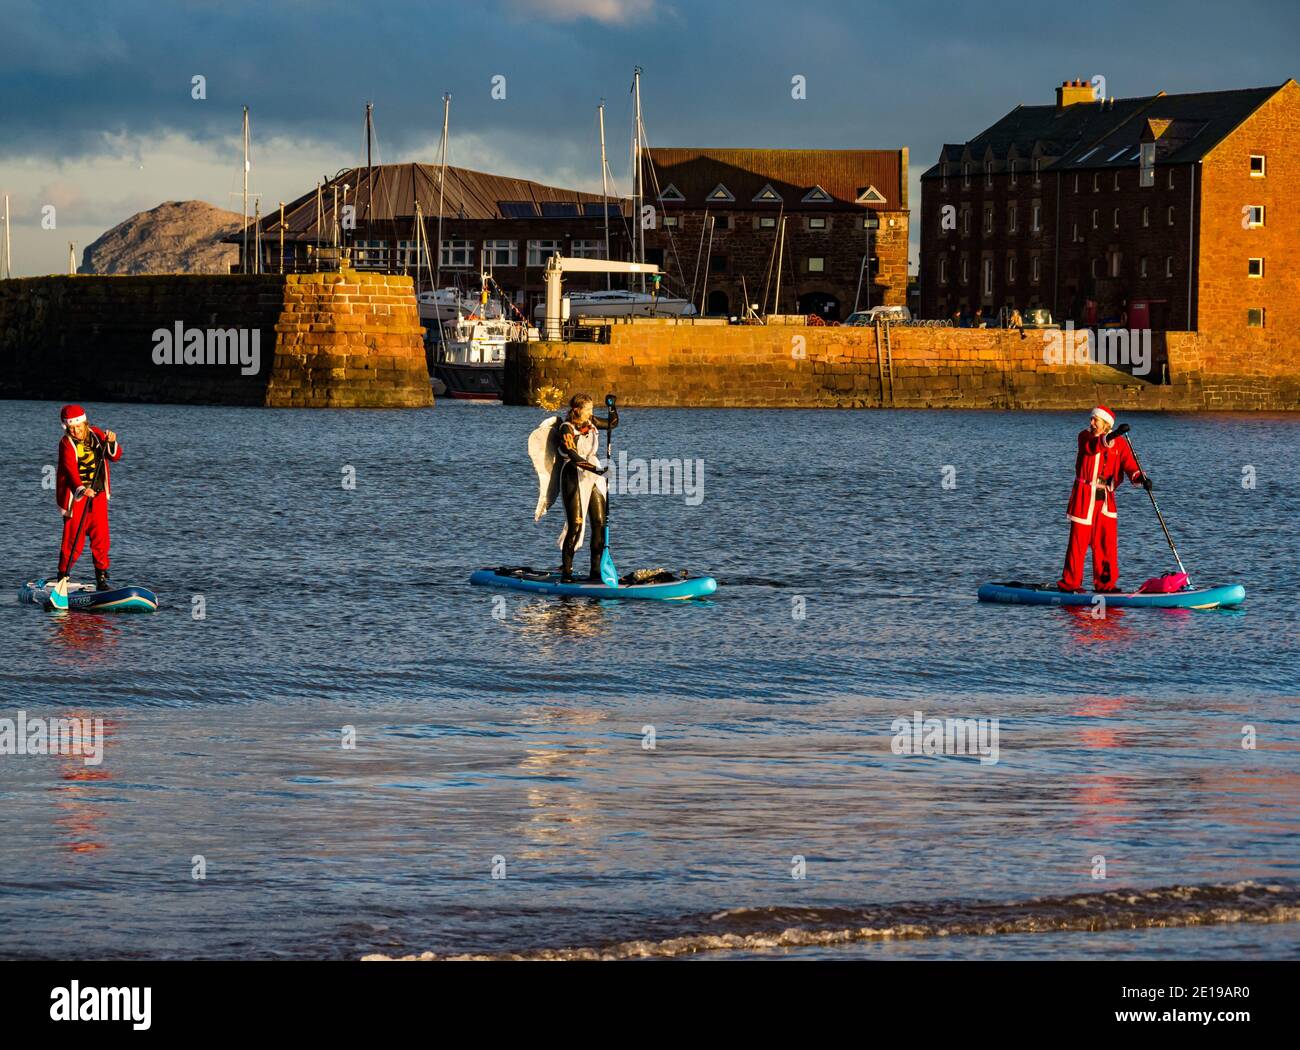 Evento benefico della comunità: Paddle boarders in costumi di Santa, North Berwick, East Lothian, Scozia, Regno Unito Foto Stock